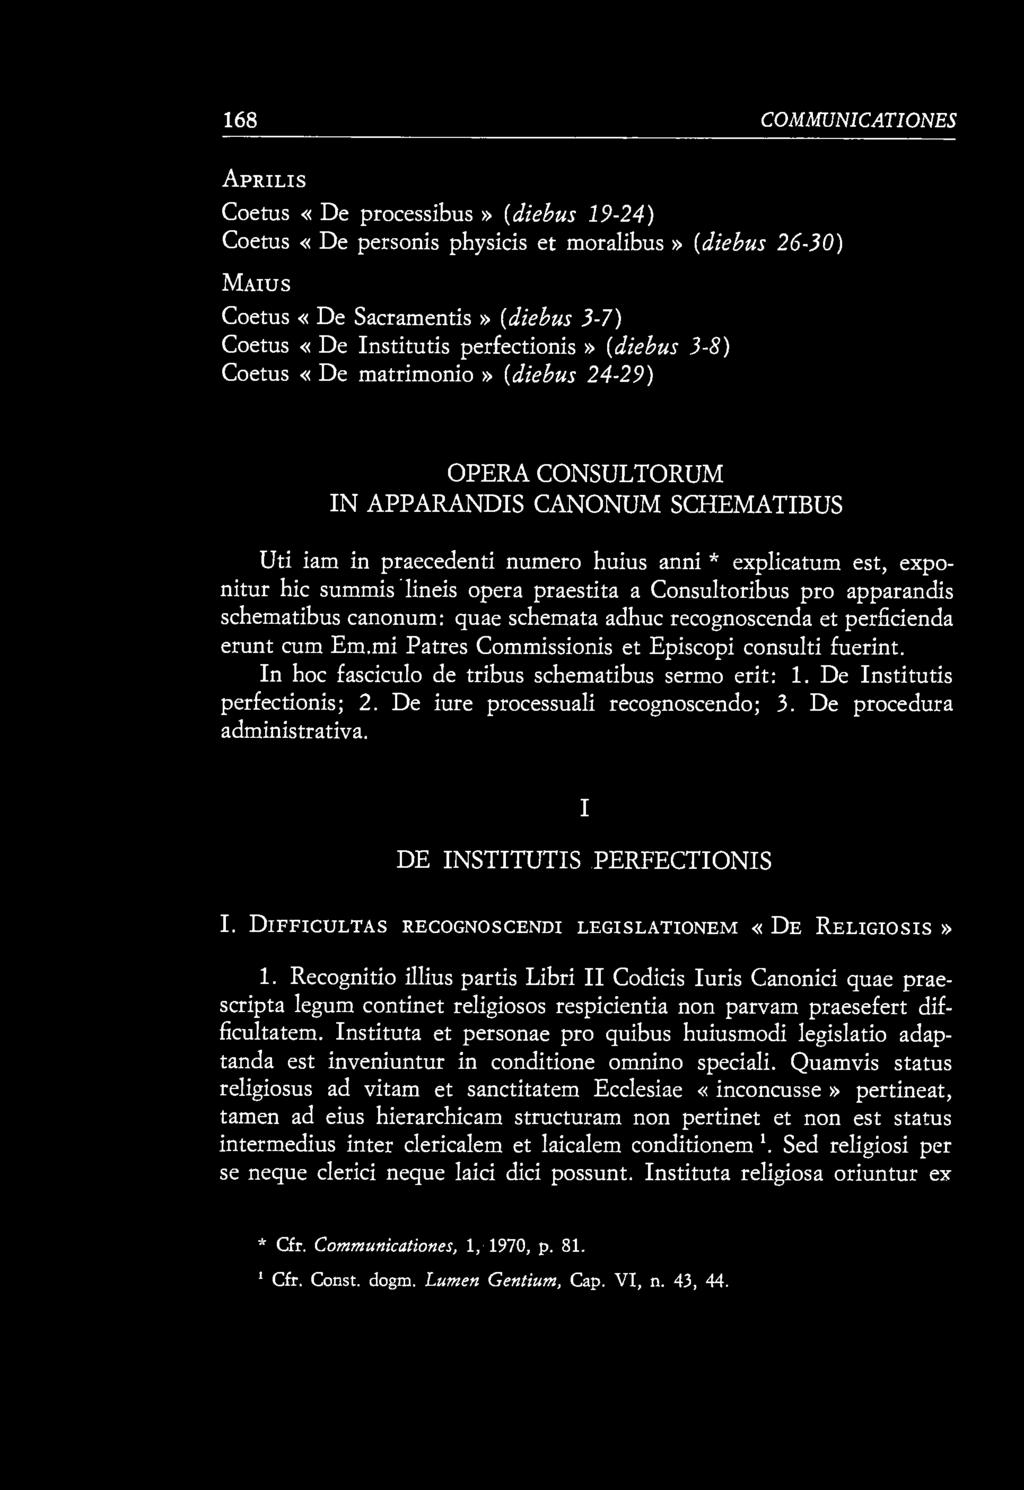 168 COMMUNIOATIONES APRILI s Coetus «De processibus» (diebus 19-24) Coetus «De personis physicis et moralibus» (diebus 26-30) MAIUS Coetus «De Sacramentis» (diebus 3-7) Coetus «De Institutis